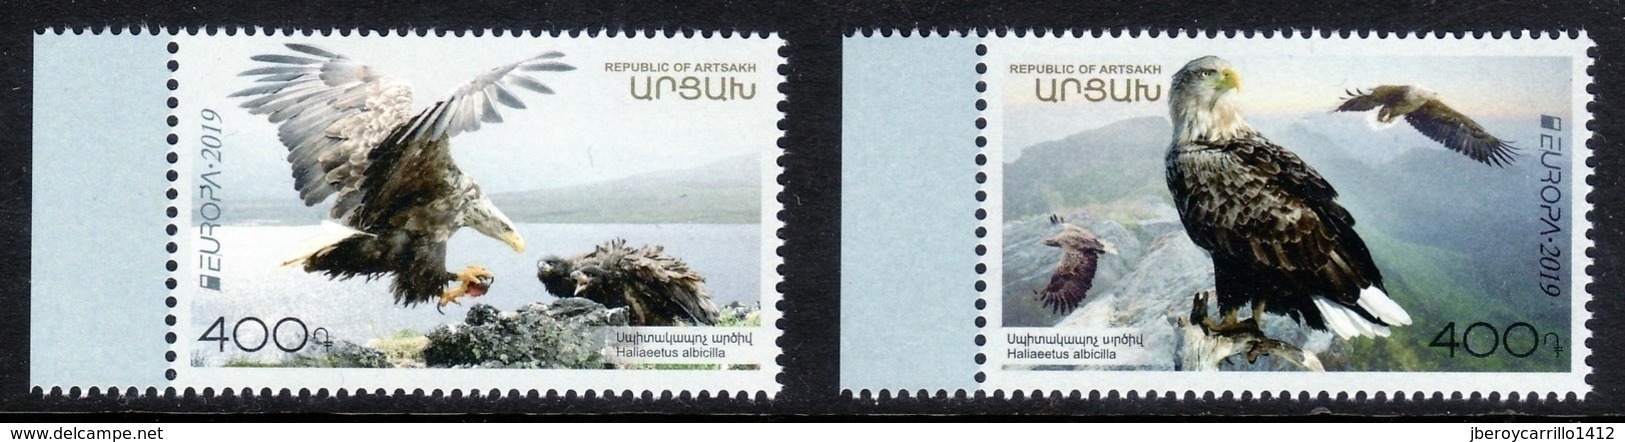 NAGORNO KARABAKH /ARMENIA  /ARTSAKH -EUROPA 2019 -NATIONAL BIRDS.-"AVES -BIRDS -VÖGEL -OISEAUX"- SET Of 2 Stamps - N - 2019